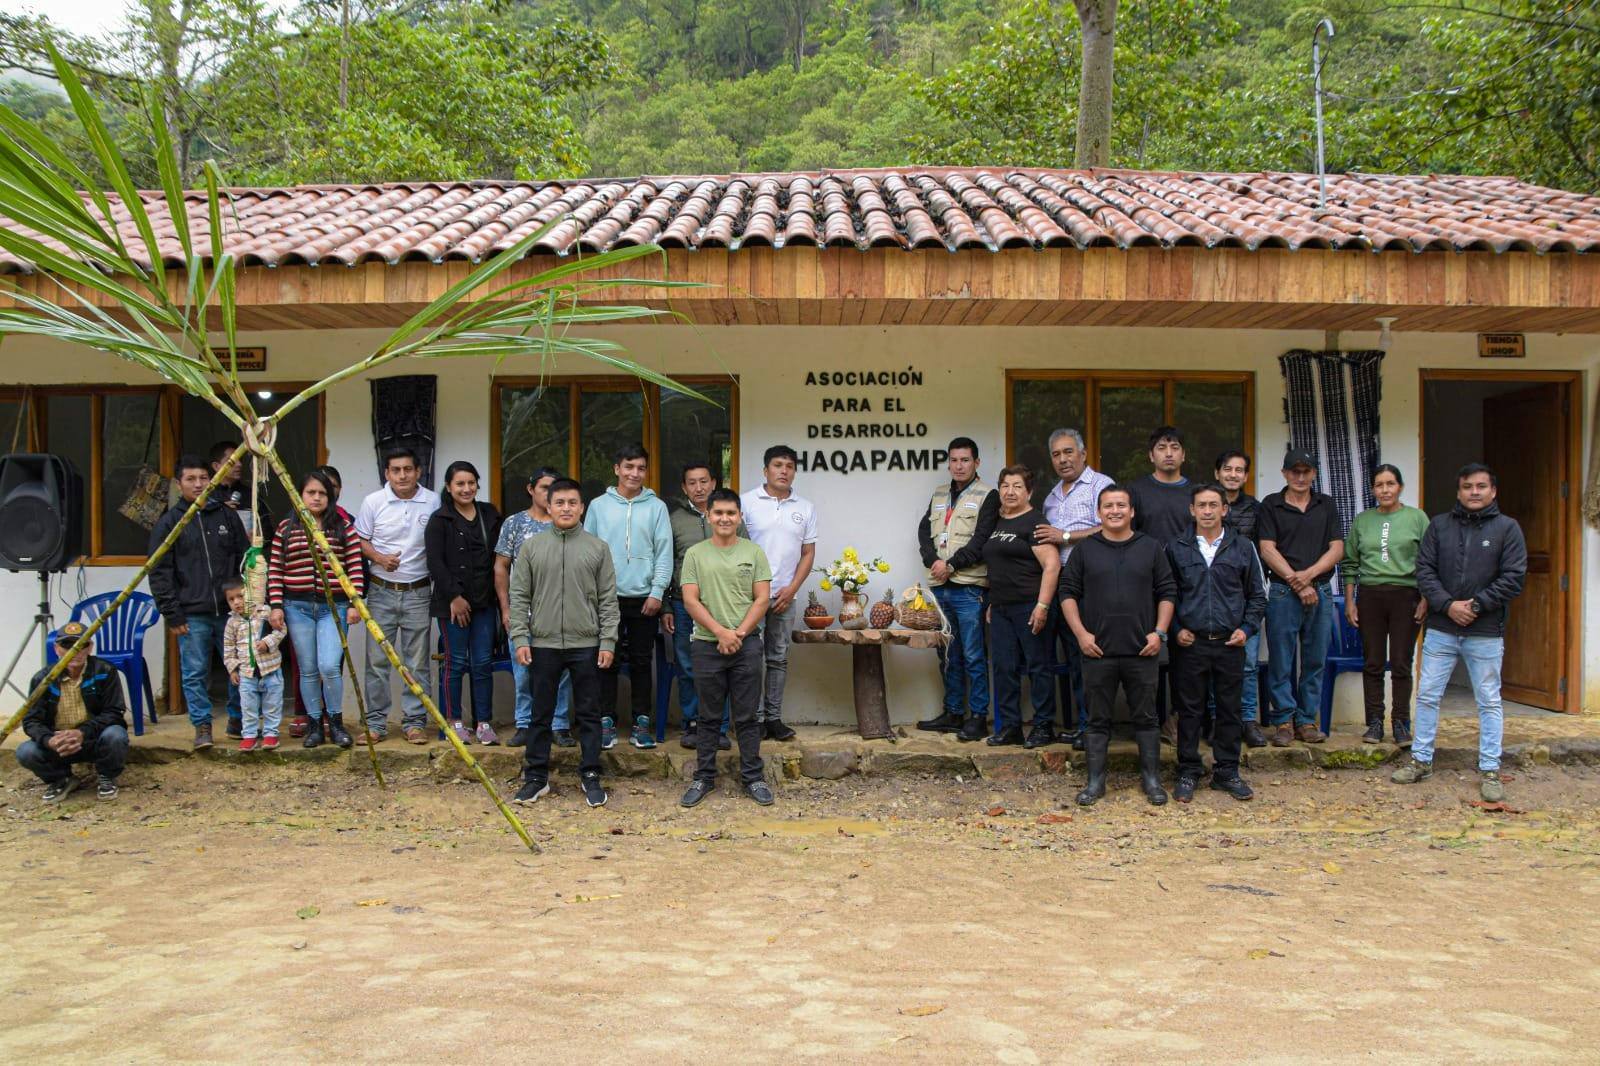 Inauguración de la oficina de turismo y taller artesanal de la “Asociación para el Desarrollo Chaqapampa”